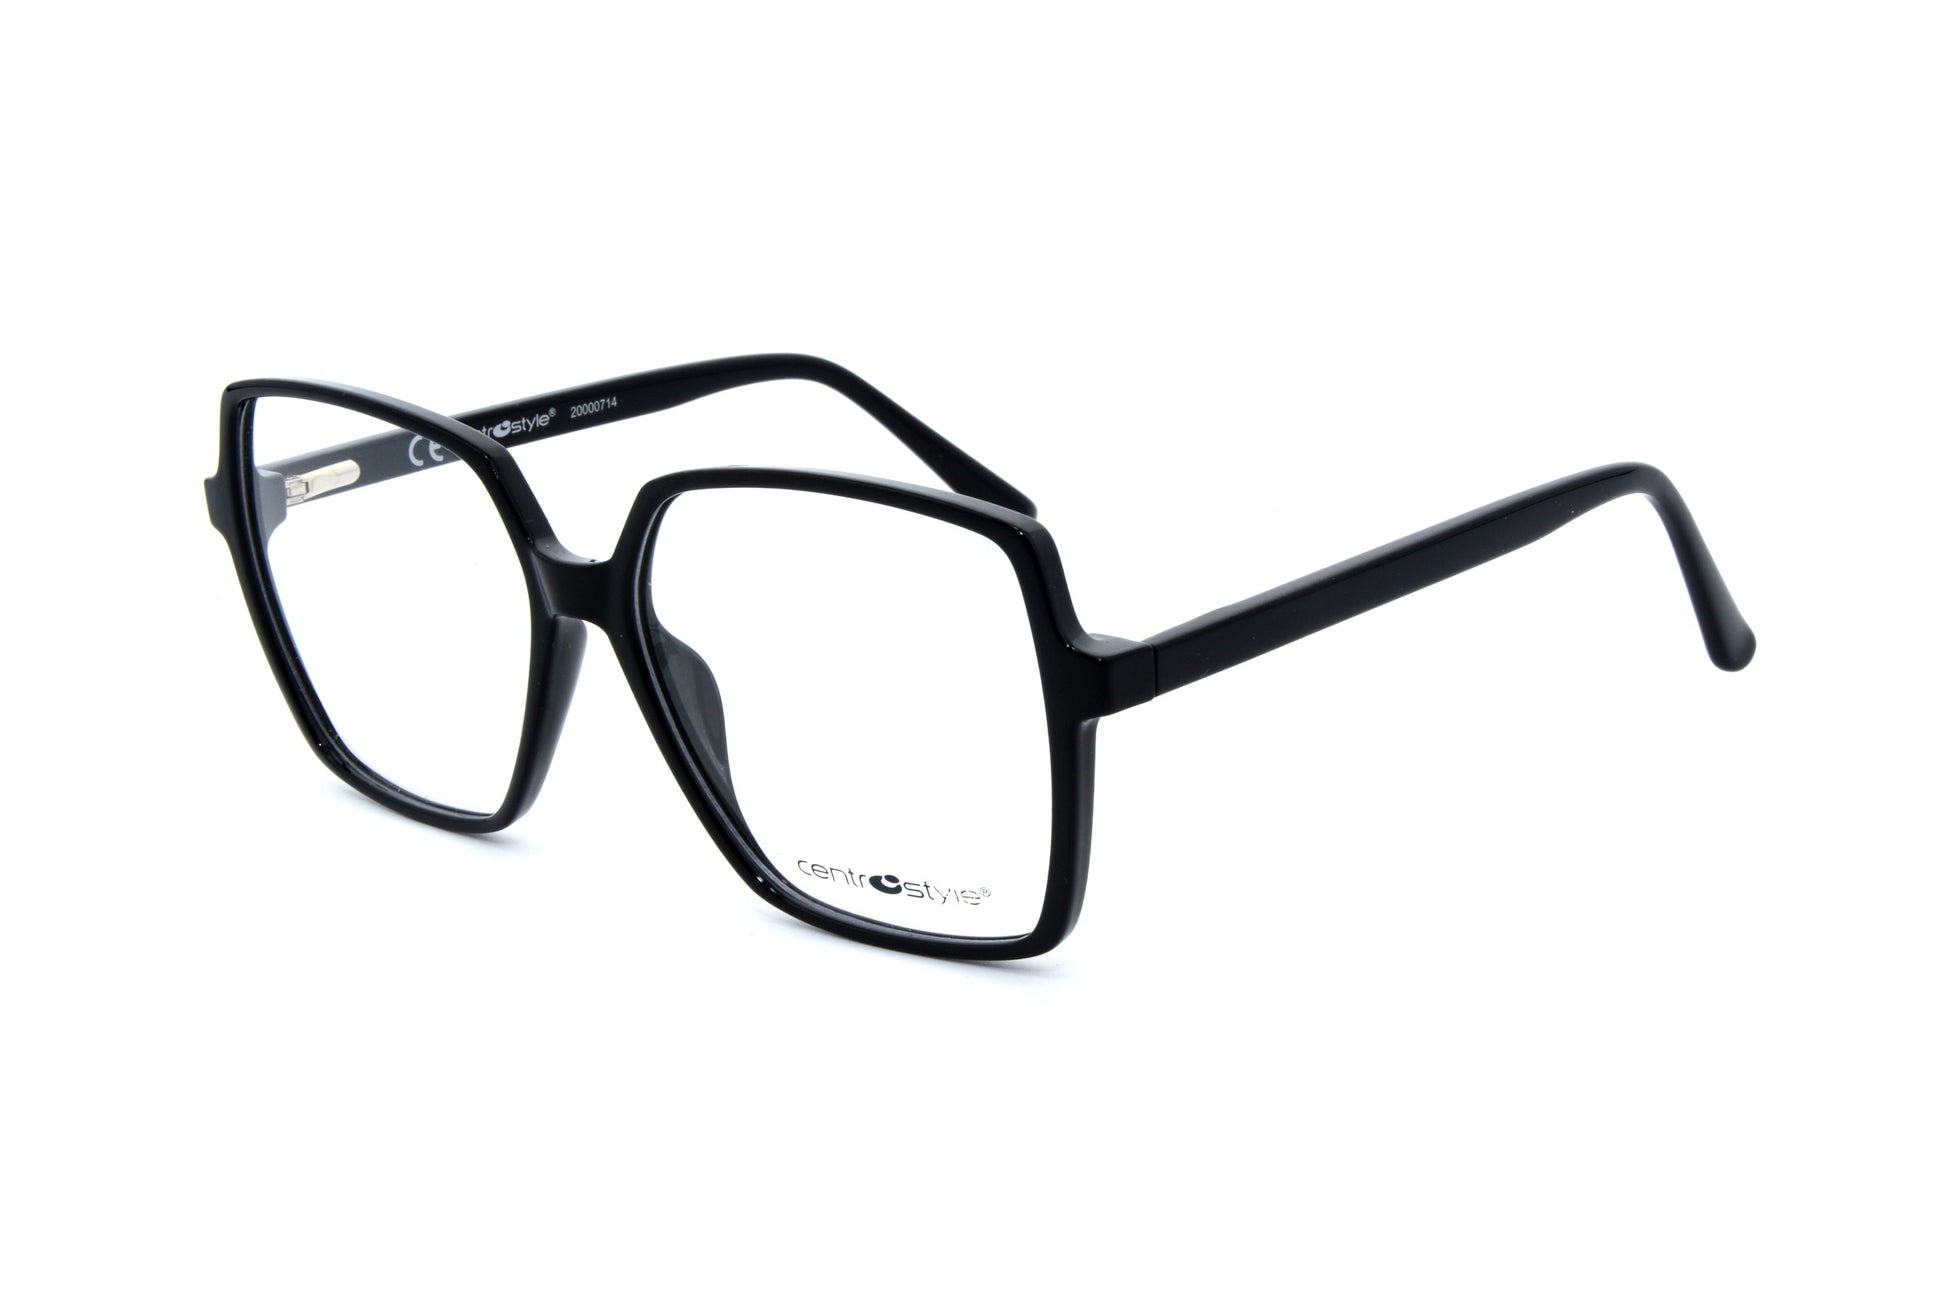 Centrostyle eyewear F027855001000 - Optics Trading